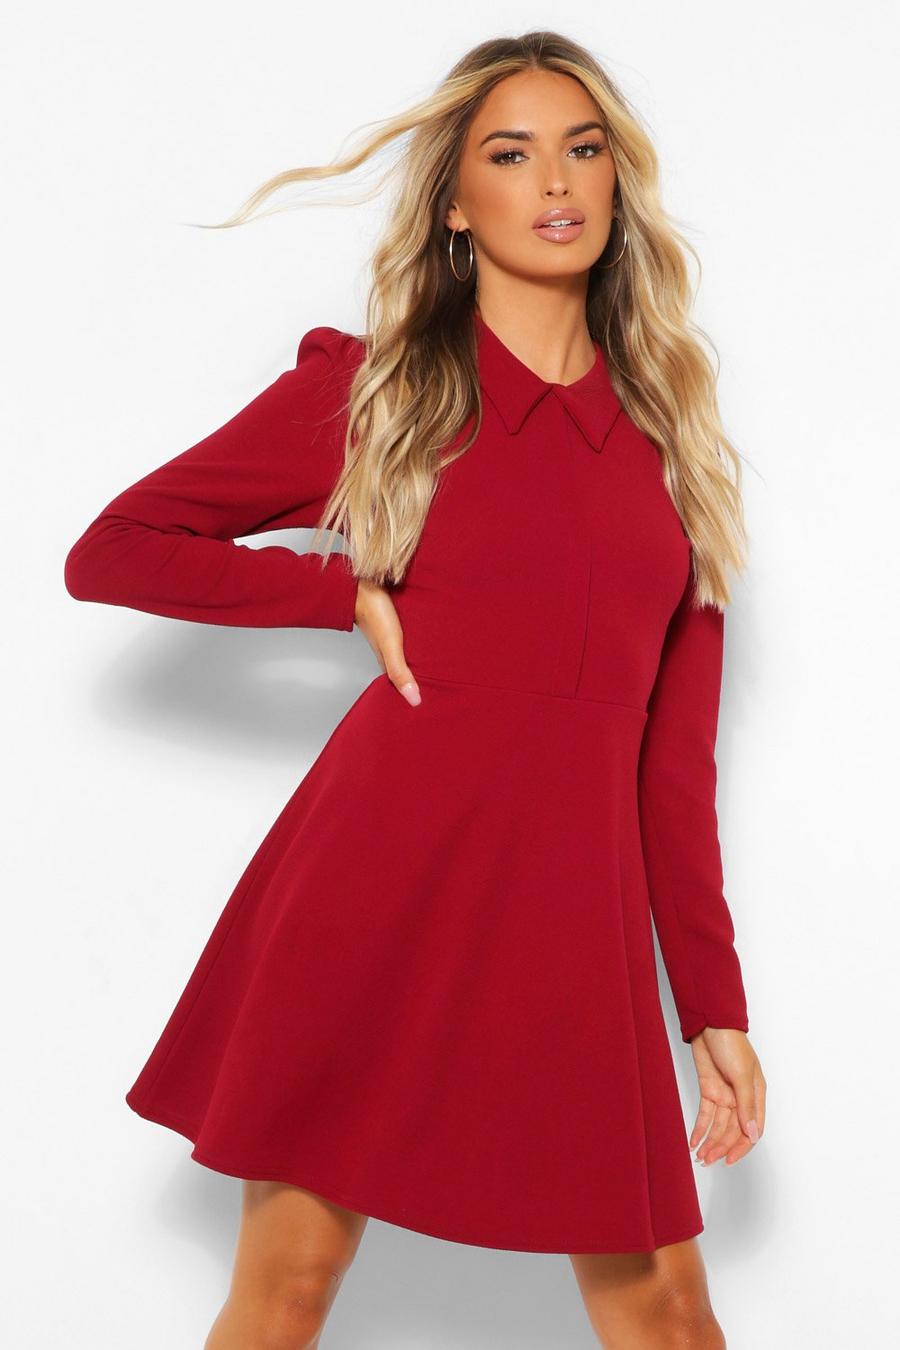 Burgundy red Long Sleeve Collared Skater Dress